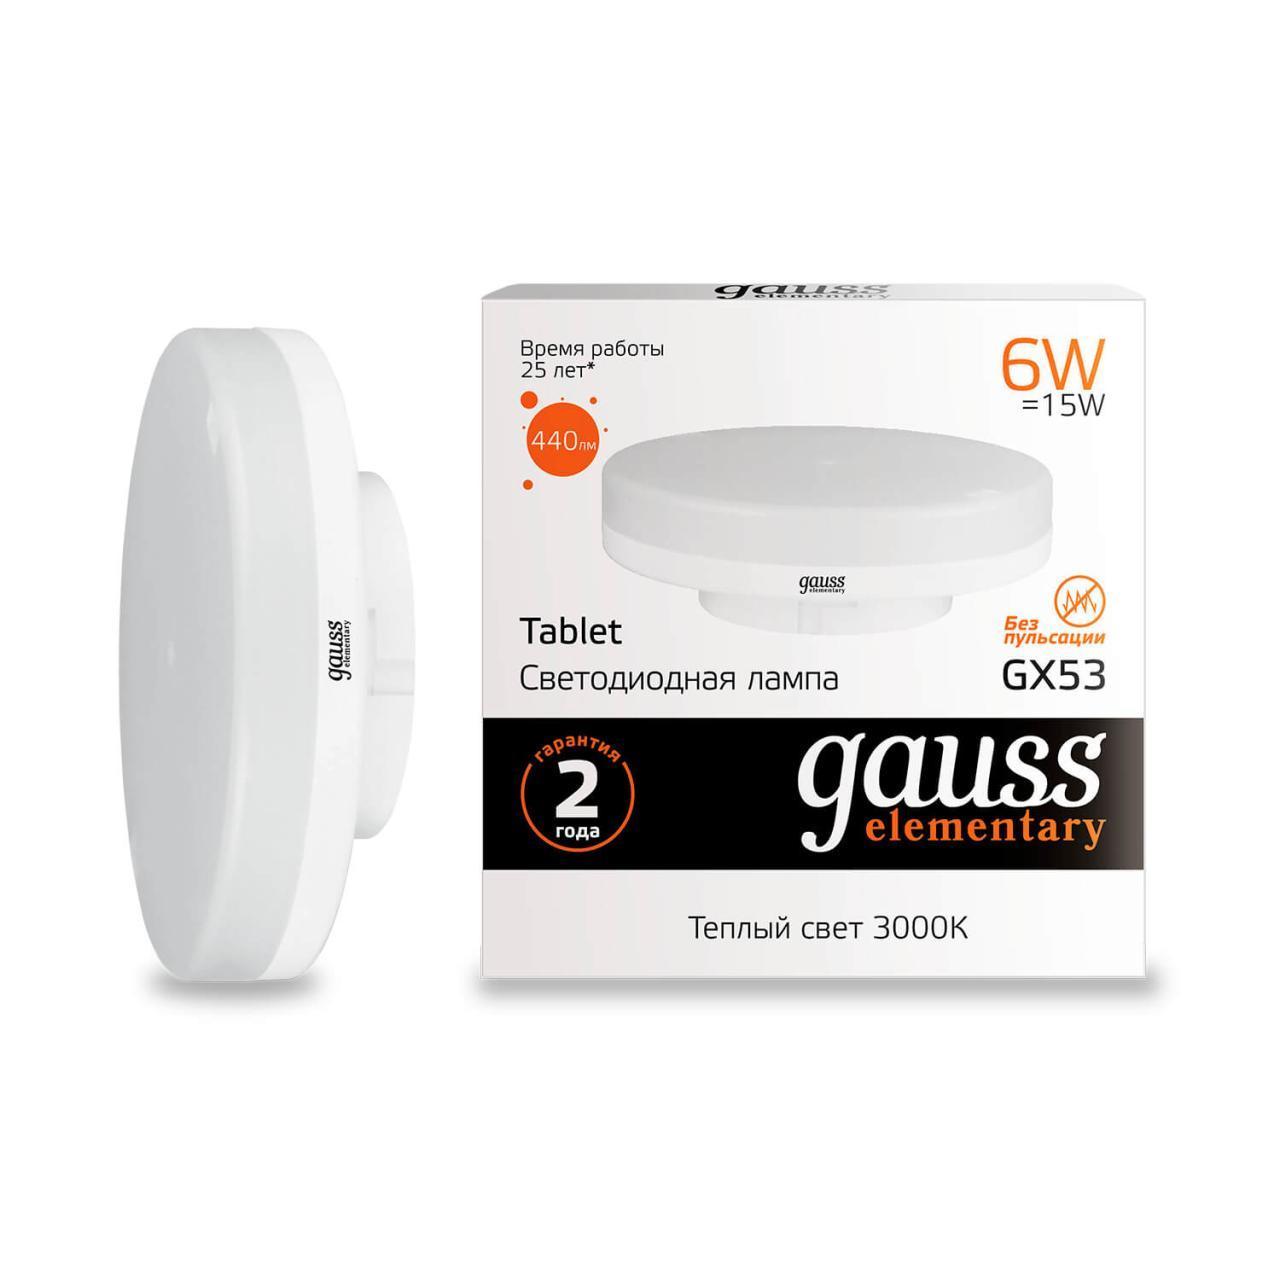   Gauss GX53 6W 3000K  83816